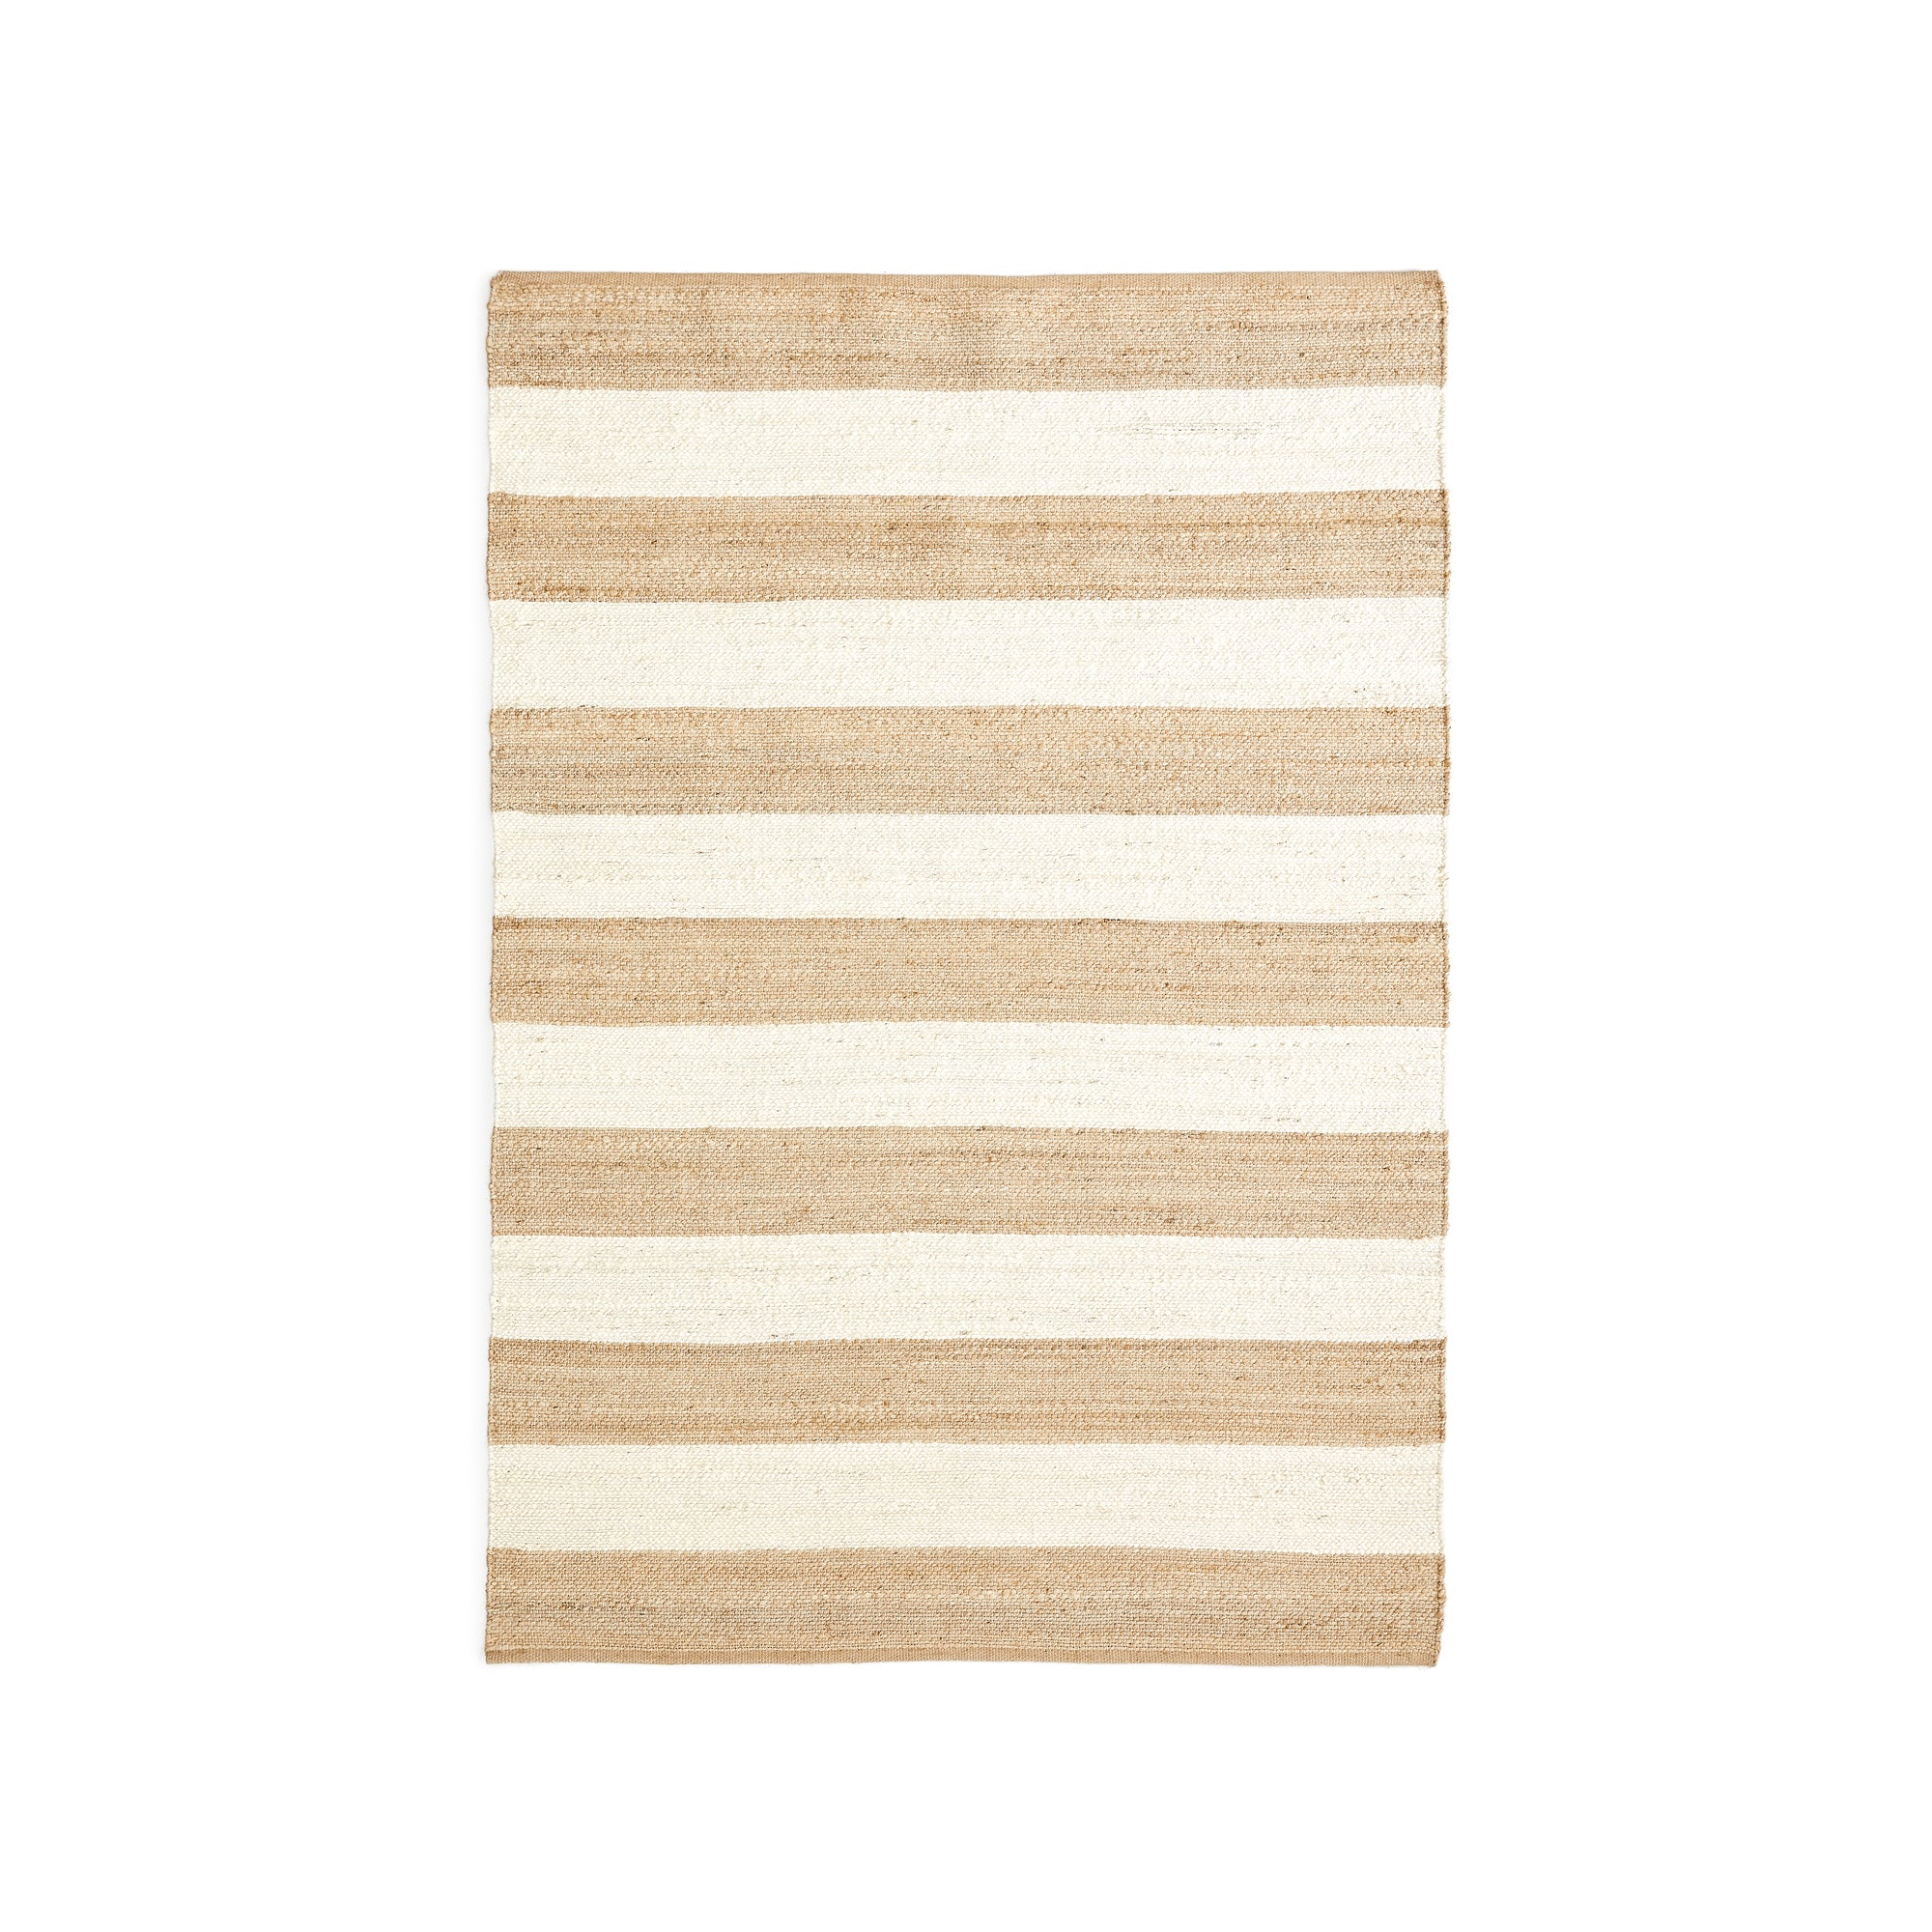 Rovira pamut és juta szőnyeg csíkokkal, natúr és fehér színben, 160 x 230 cm